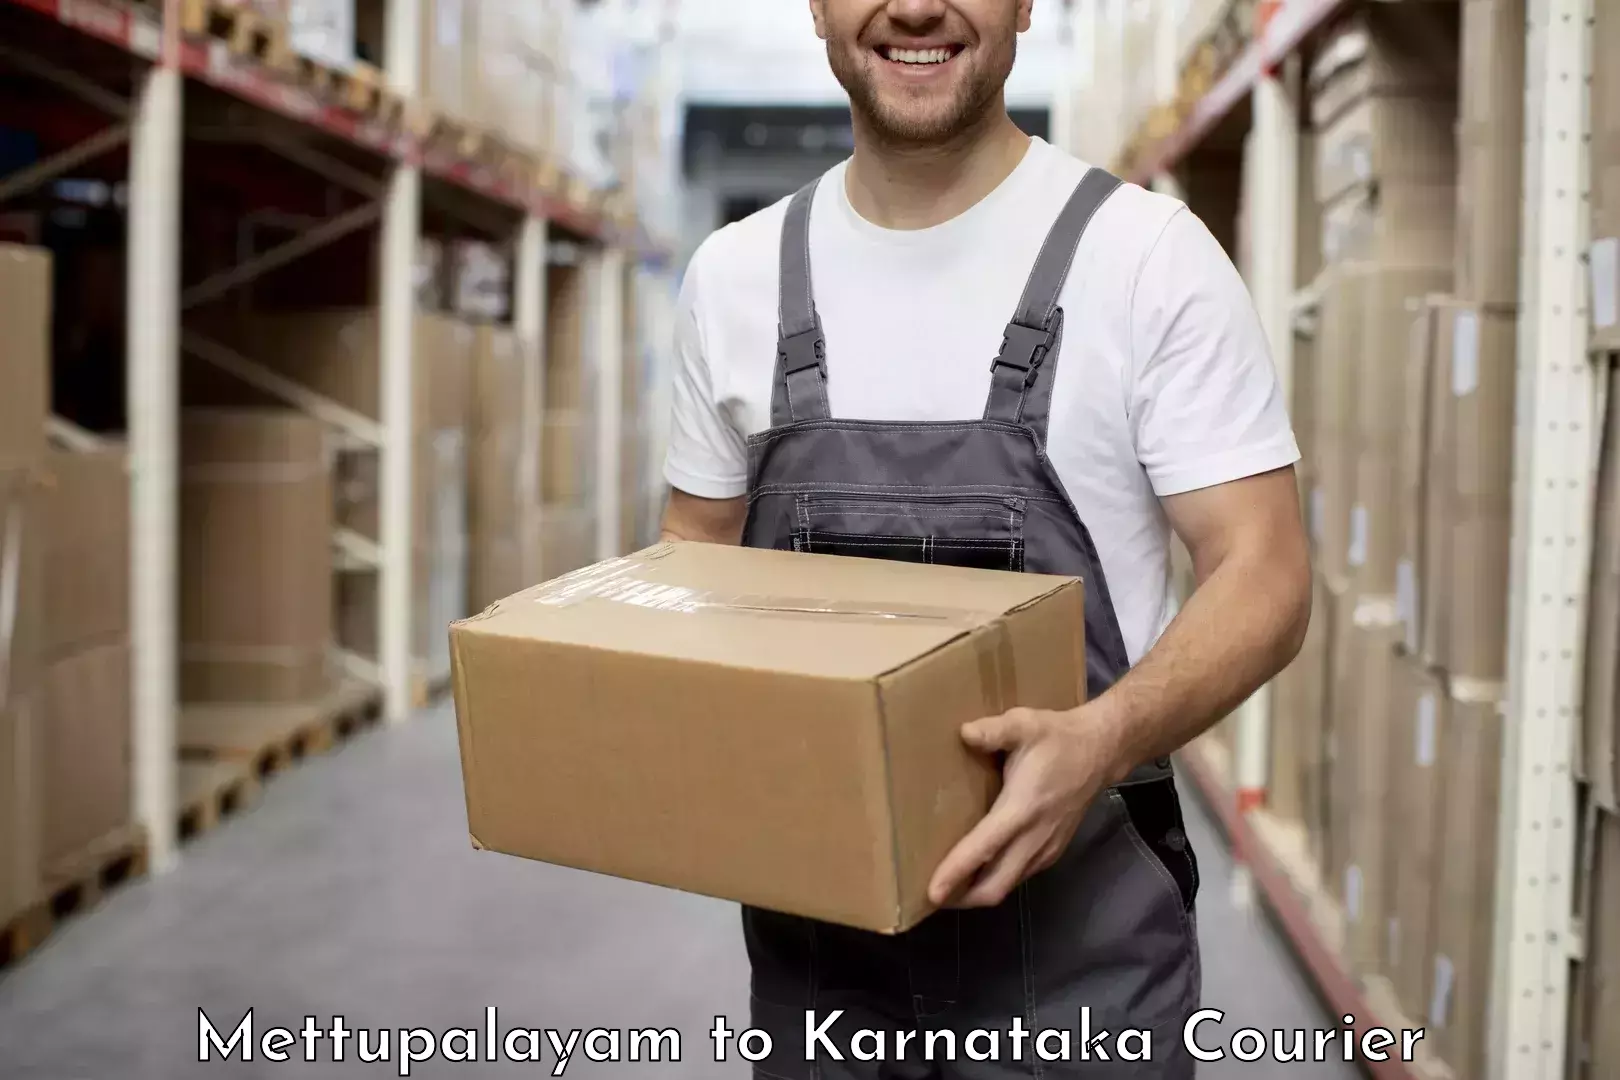 Express logistics providers Mettupalayam to Ankola